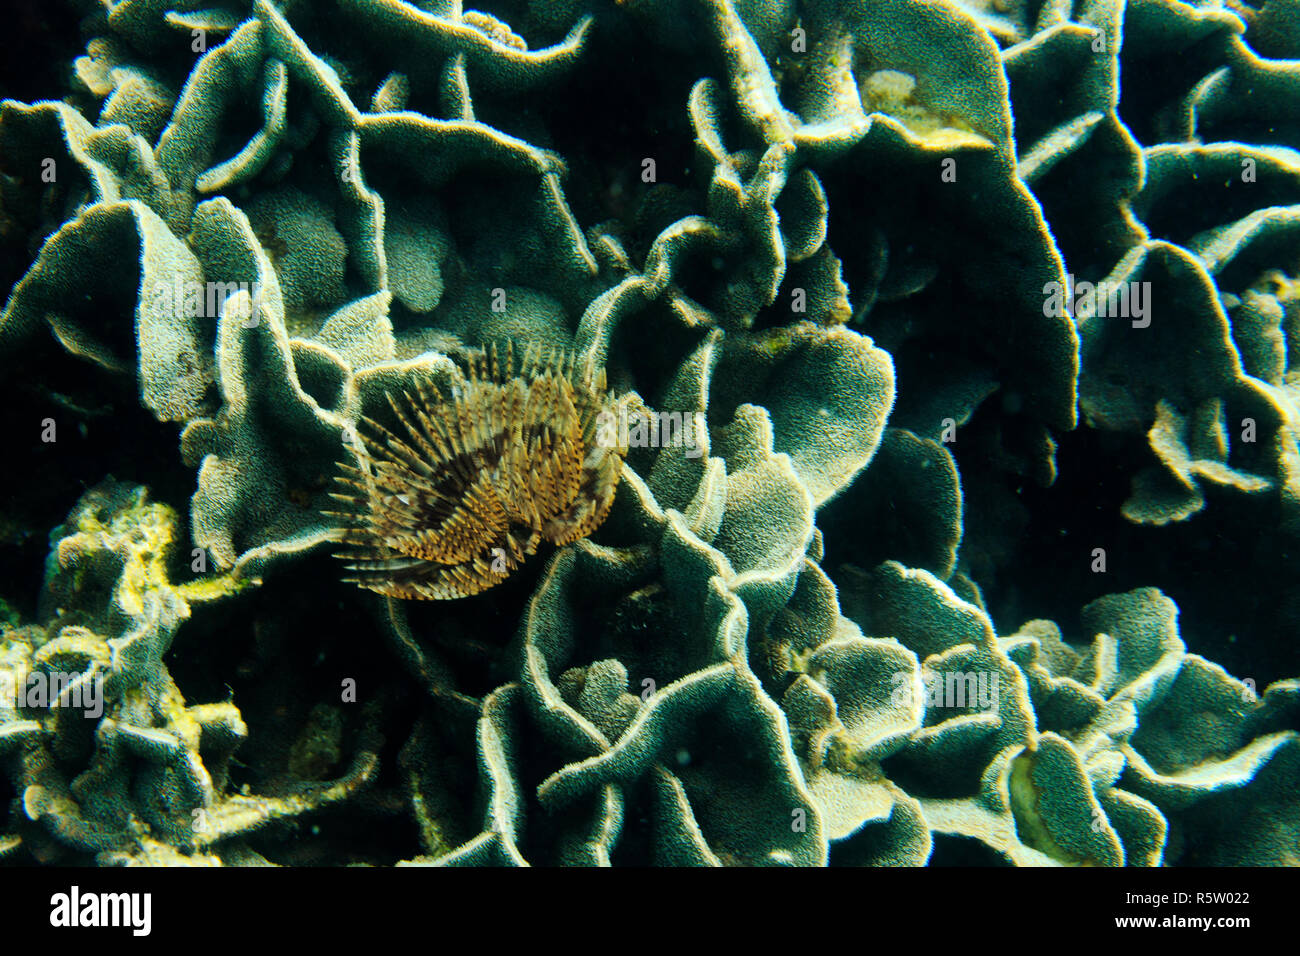 pavona cactus and seaworm Stock Photo